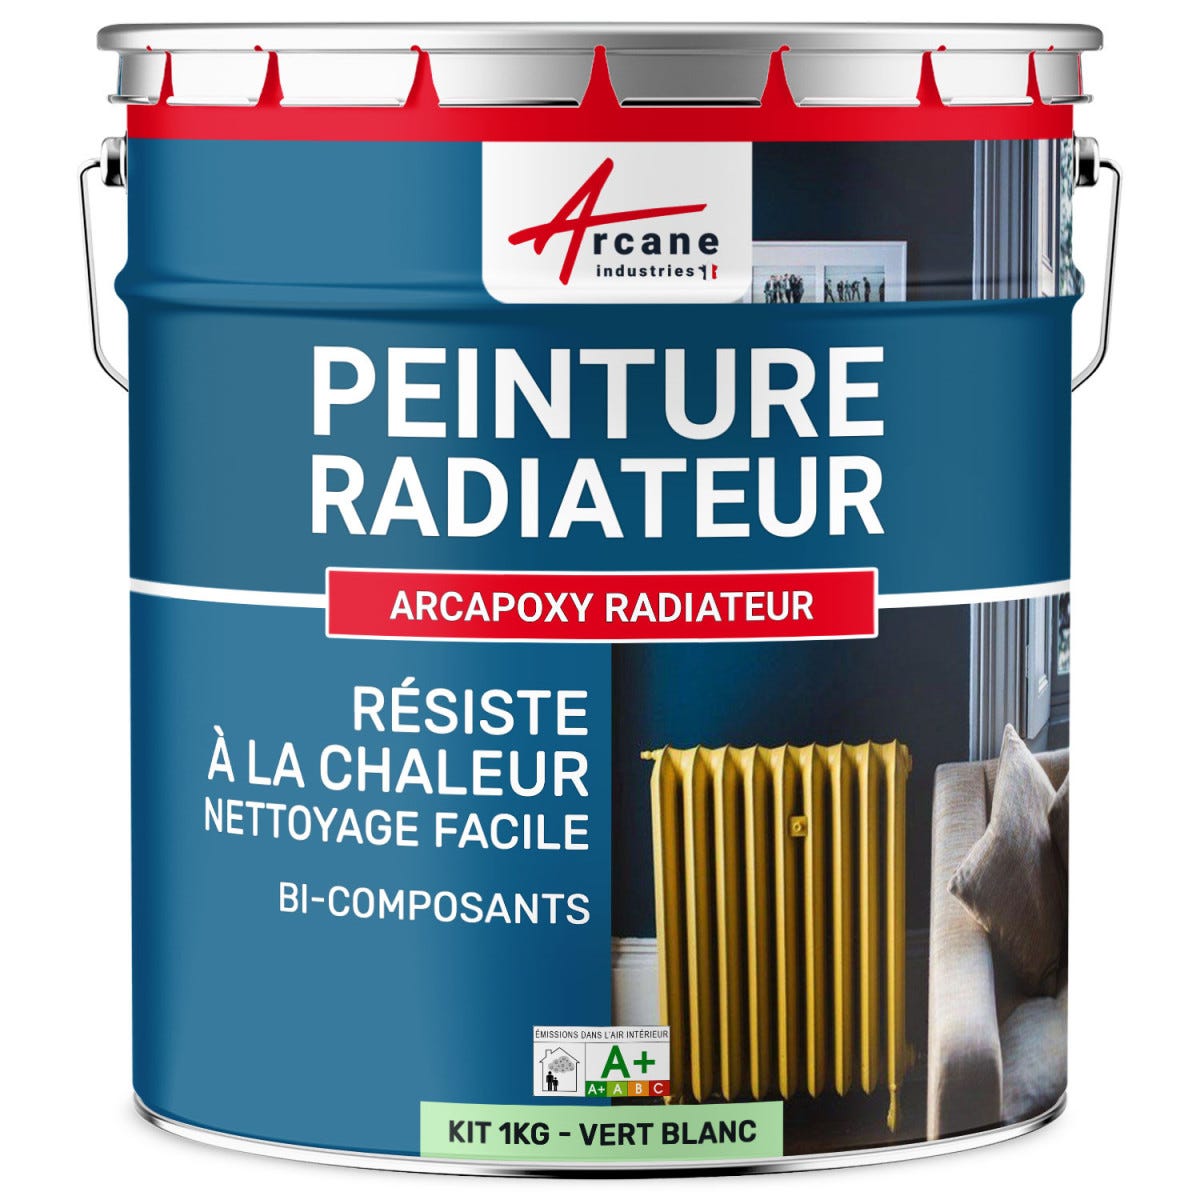 Peinture Radiateur fonte acier alu - PEINTURE RADIATEUR - 1 kg (jusqu'à 5 m² en 2 couches) - Vert Blanc - RAL 6019 - ARCANE INDUSTRIES 5